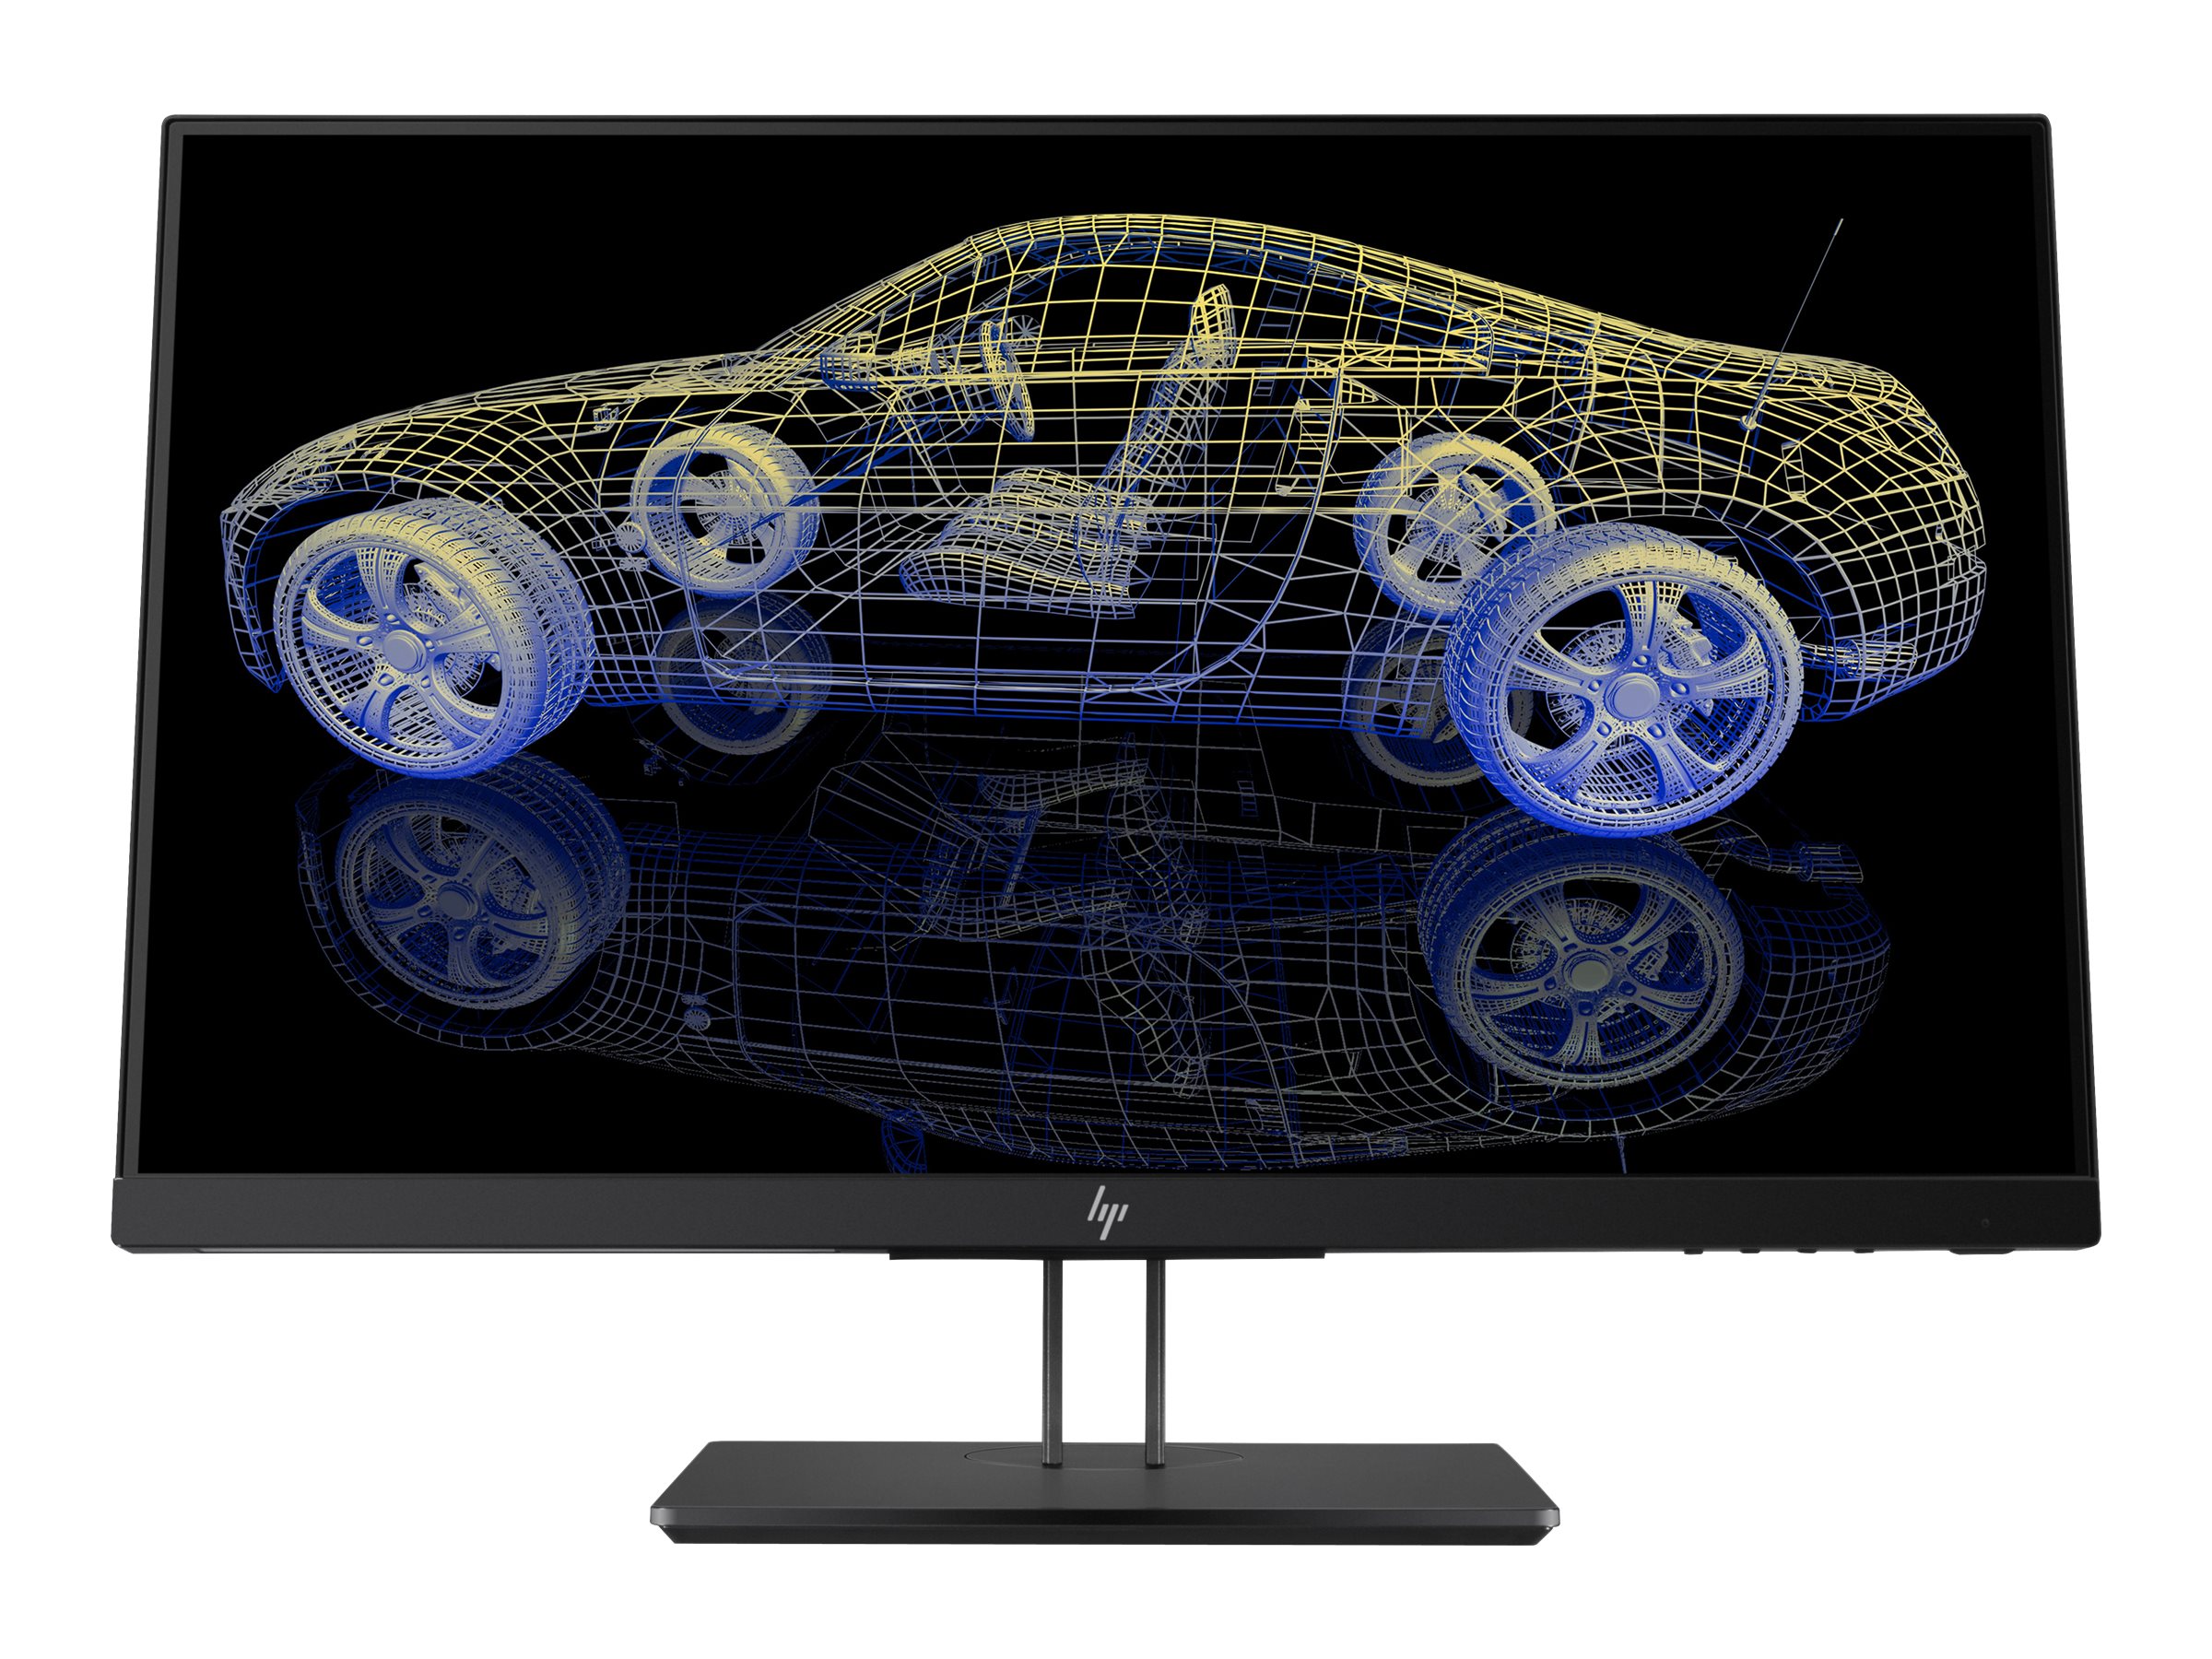 HP Z23n G2 - LED monitor